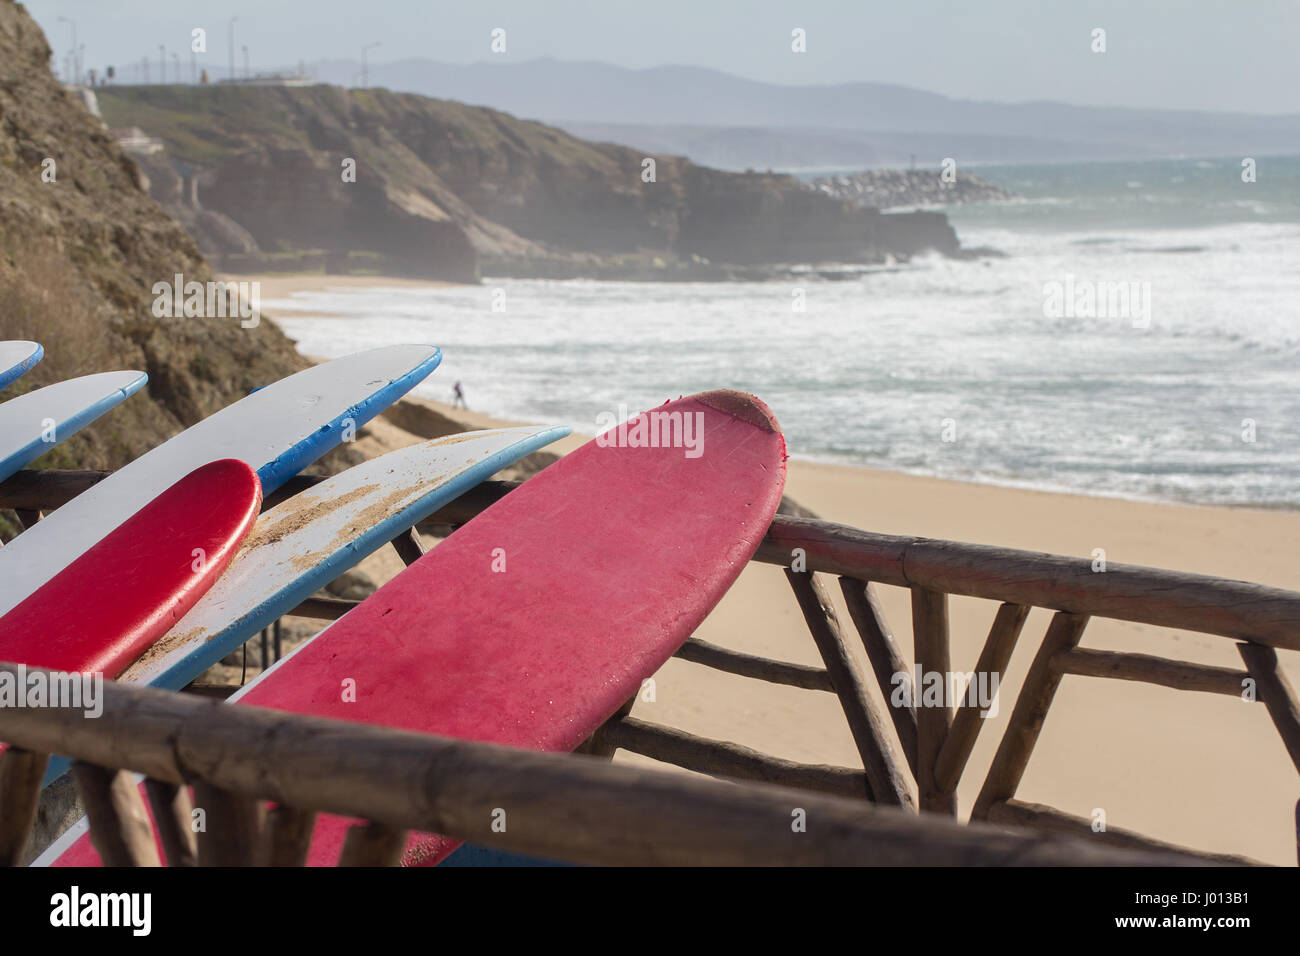 Tavole da surf in spiaggia Foto Stock